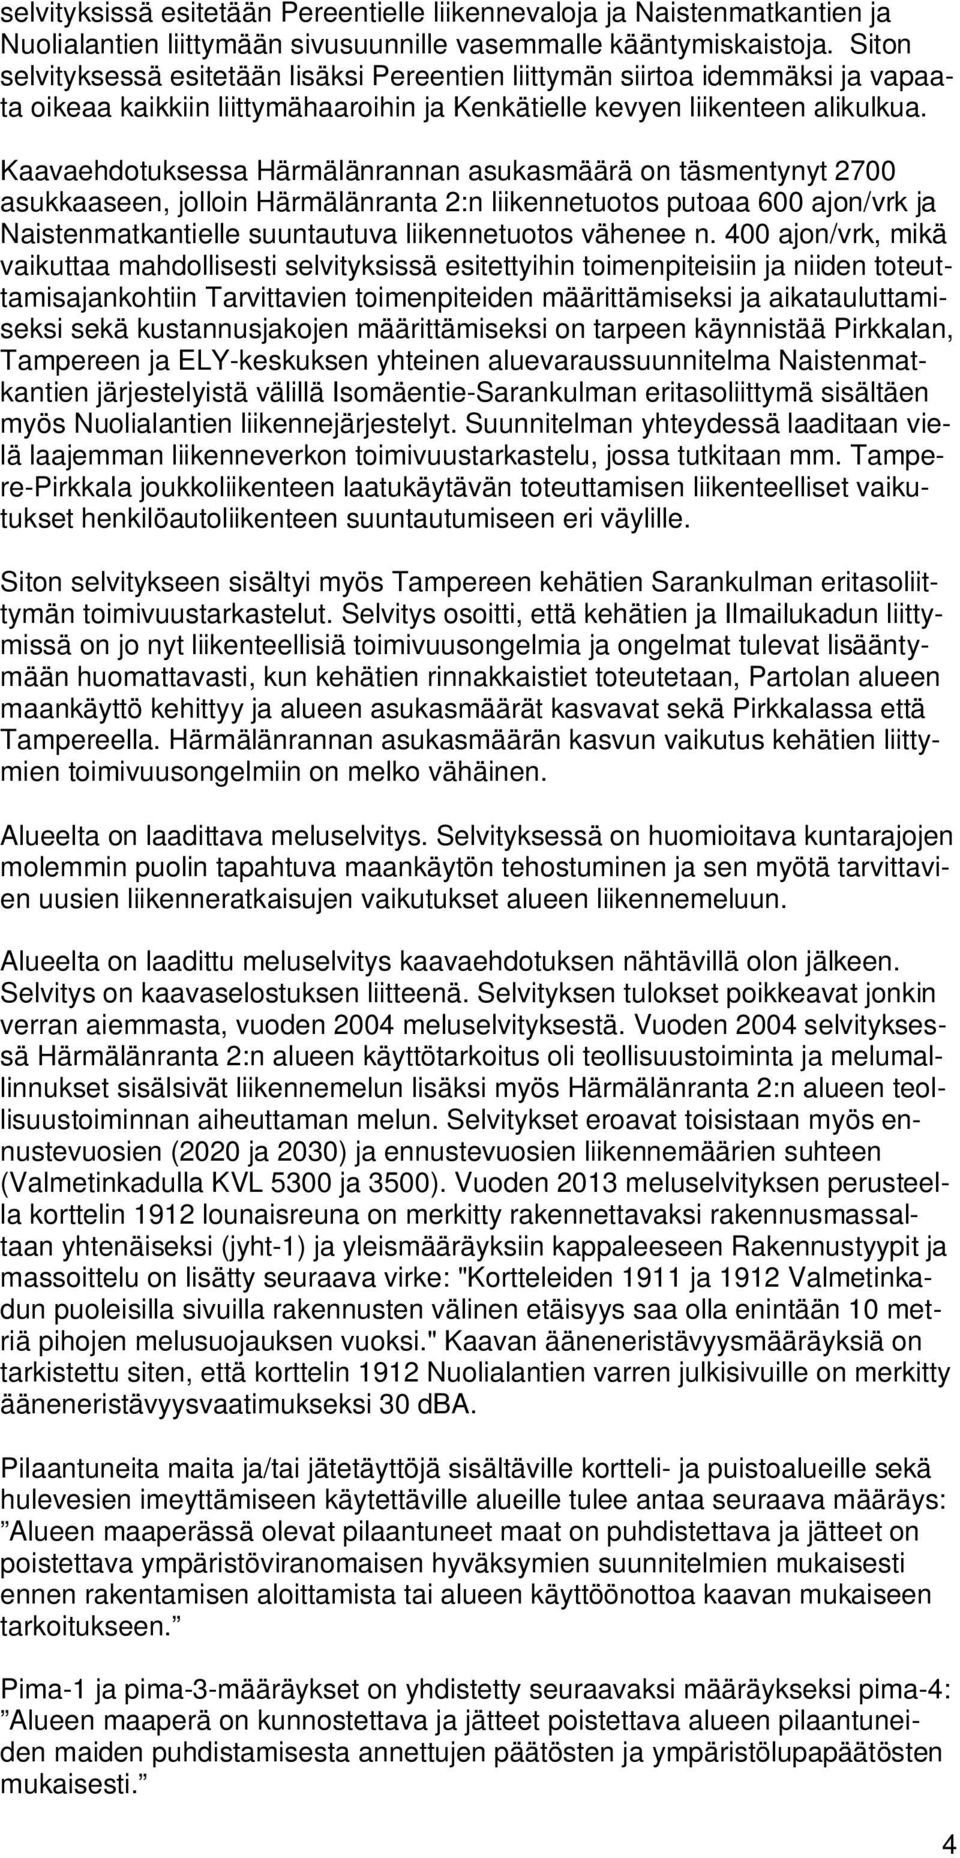 Kaavaehdotuksessa Härmälänrannan asukasmäärä on täsmentynyt 2700 asukkaaseen, jolloin Härmälänranta 2:n liikennetuotos putoaa 600 ajon/vrk ja Naistenmatkantielle suuntautuva liikennetuotos vähenee n.